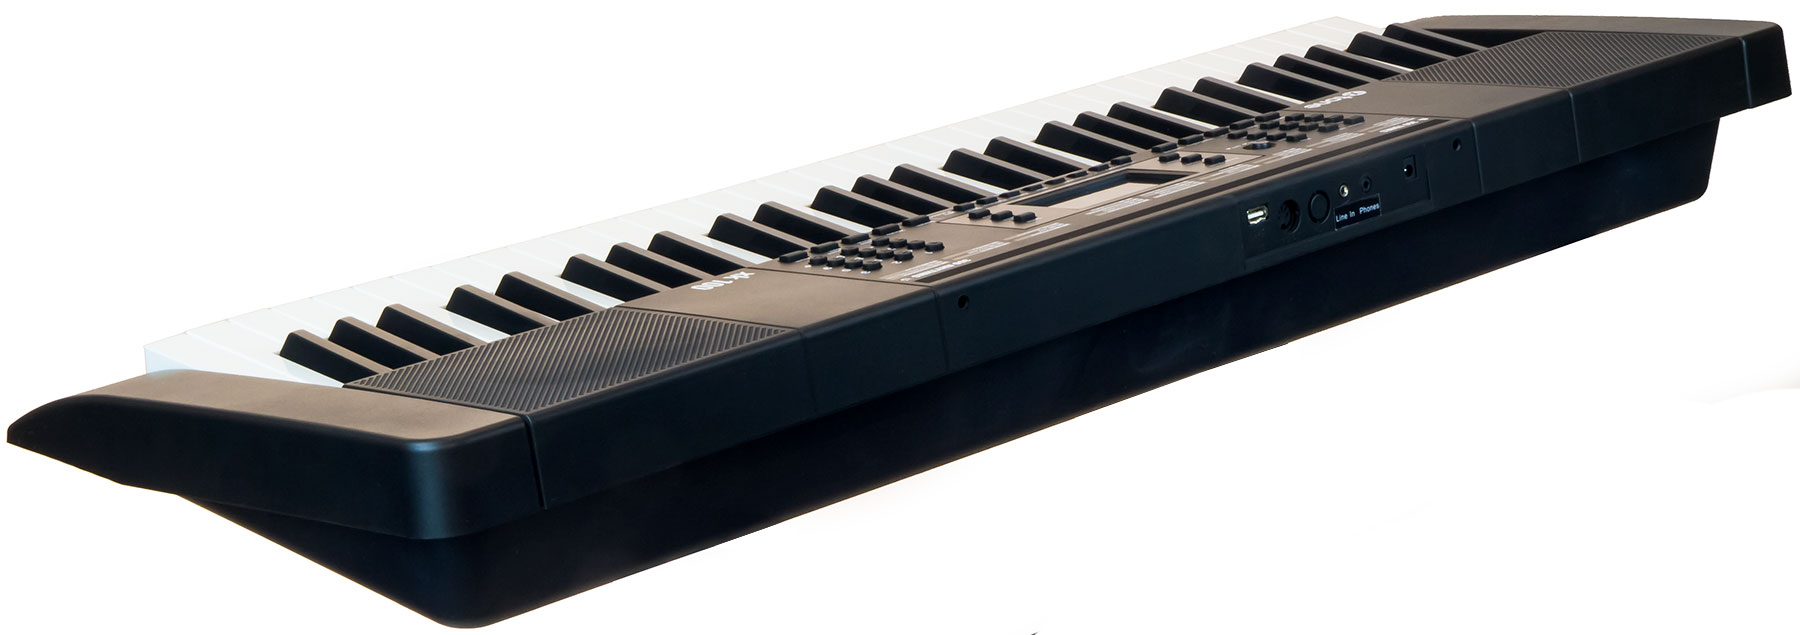 X-tone Xk100 Clavier Arrangeur - Teclado de entertainer / Arreglista - Variation 2